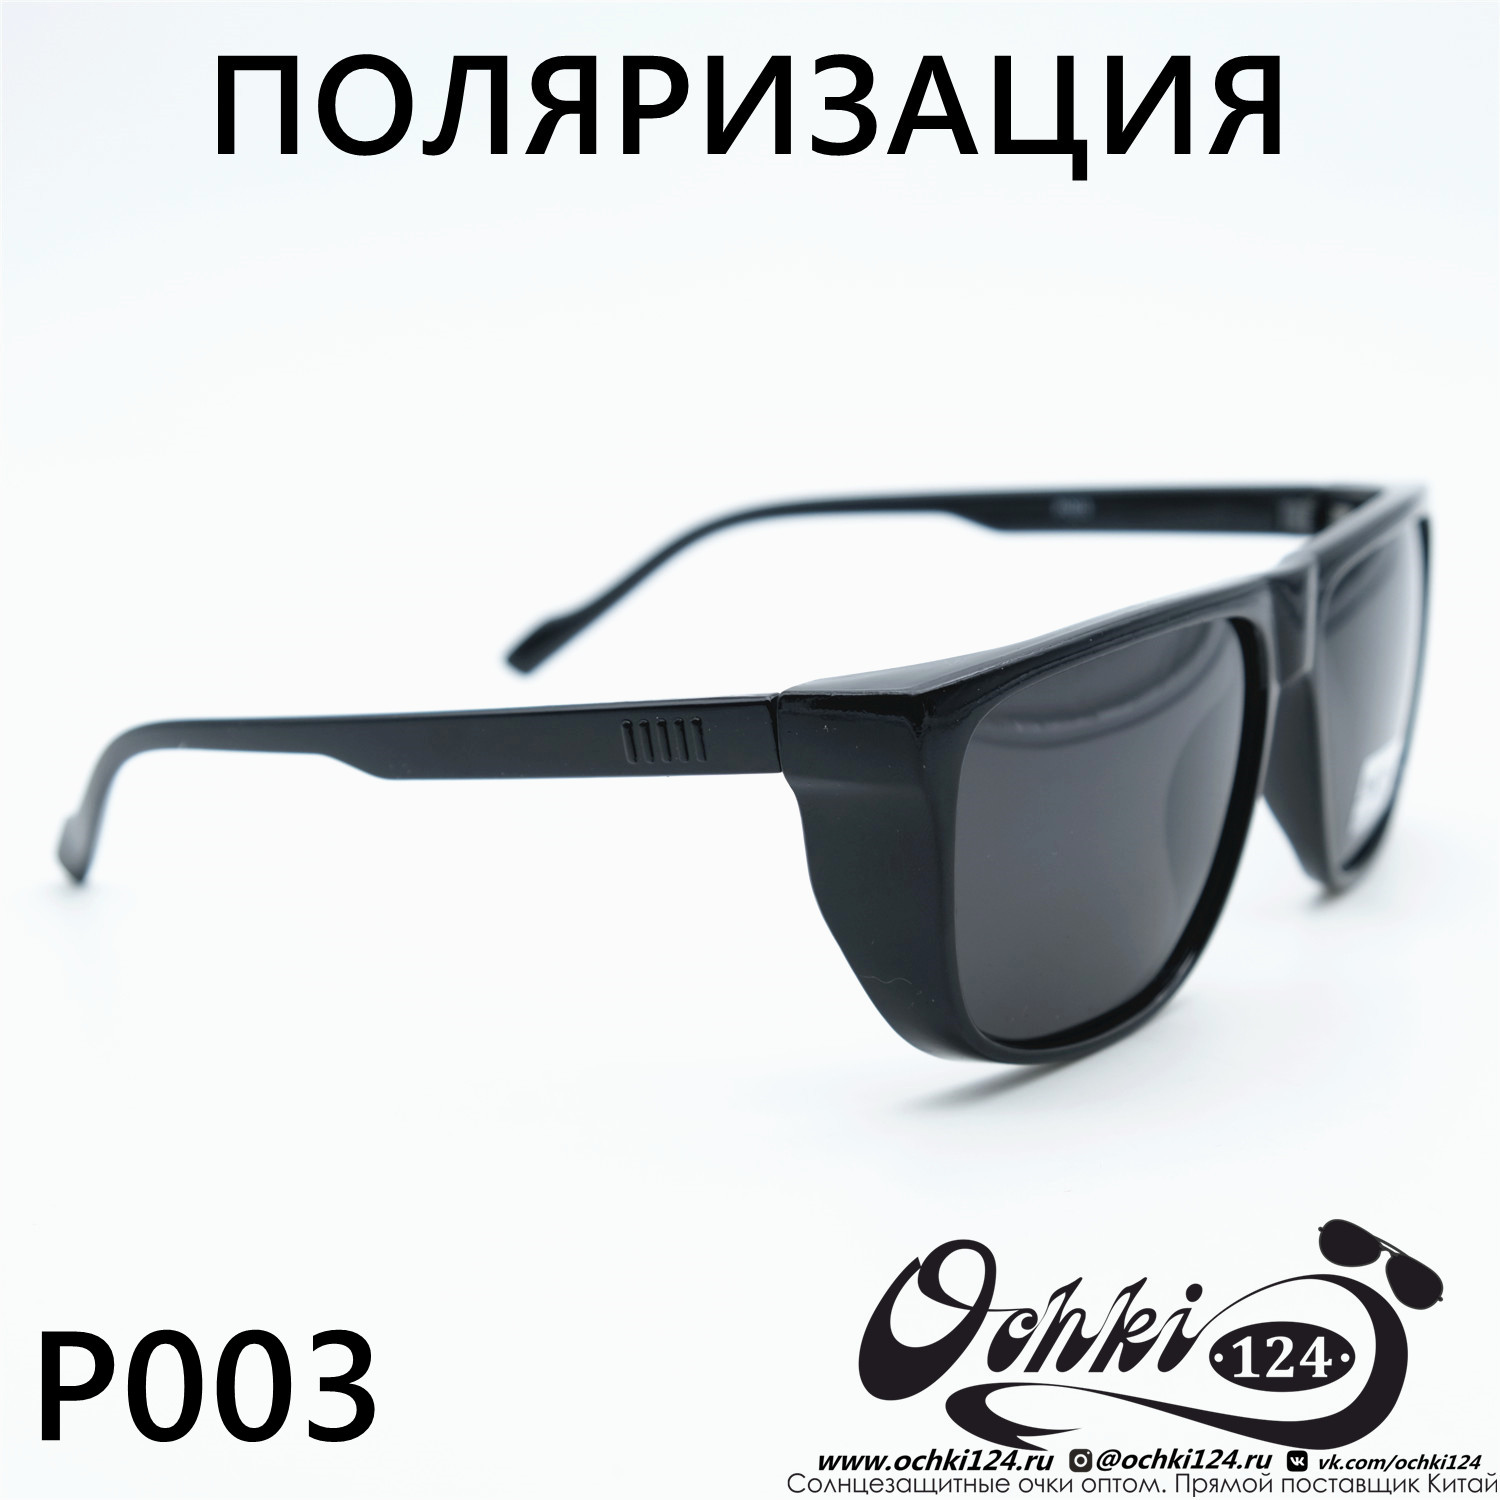  Солнцезащитные очки картинка Мужские MATRIUXT  Квадратные P003-C1 